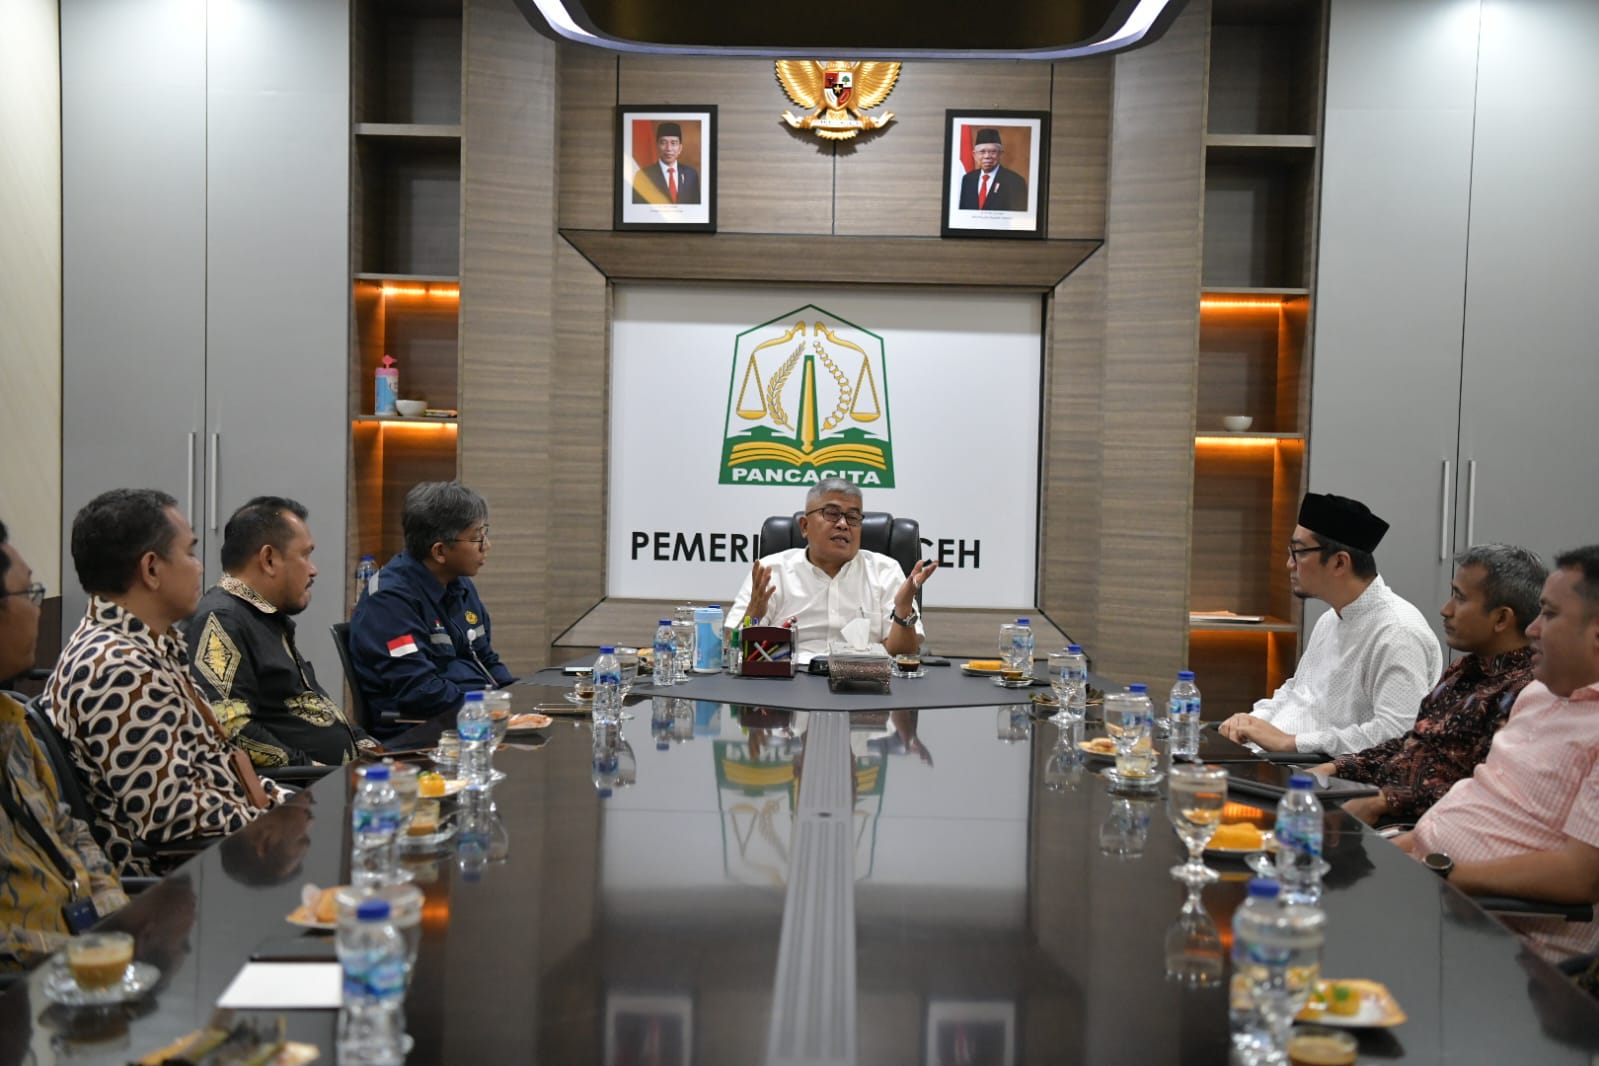 Pj Gubernur: Insya Allah, Temuan Baru Mubadala Beri Manfaat Ekonomi Bagi Aceh